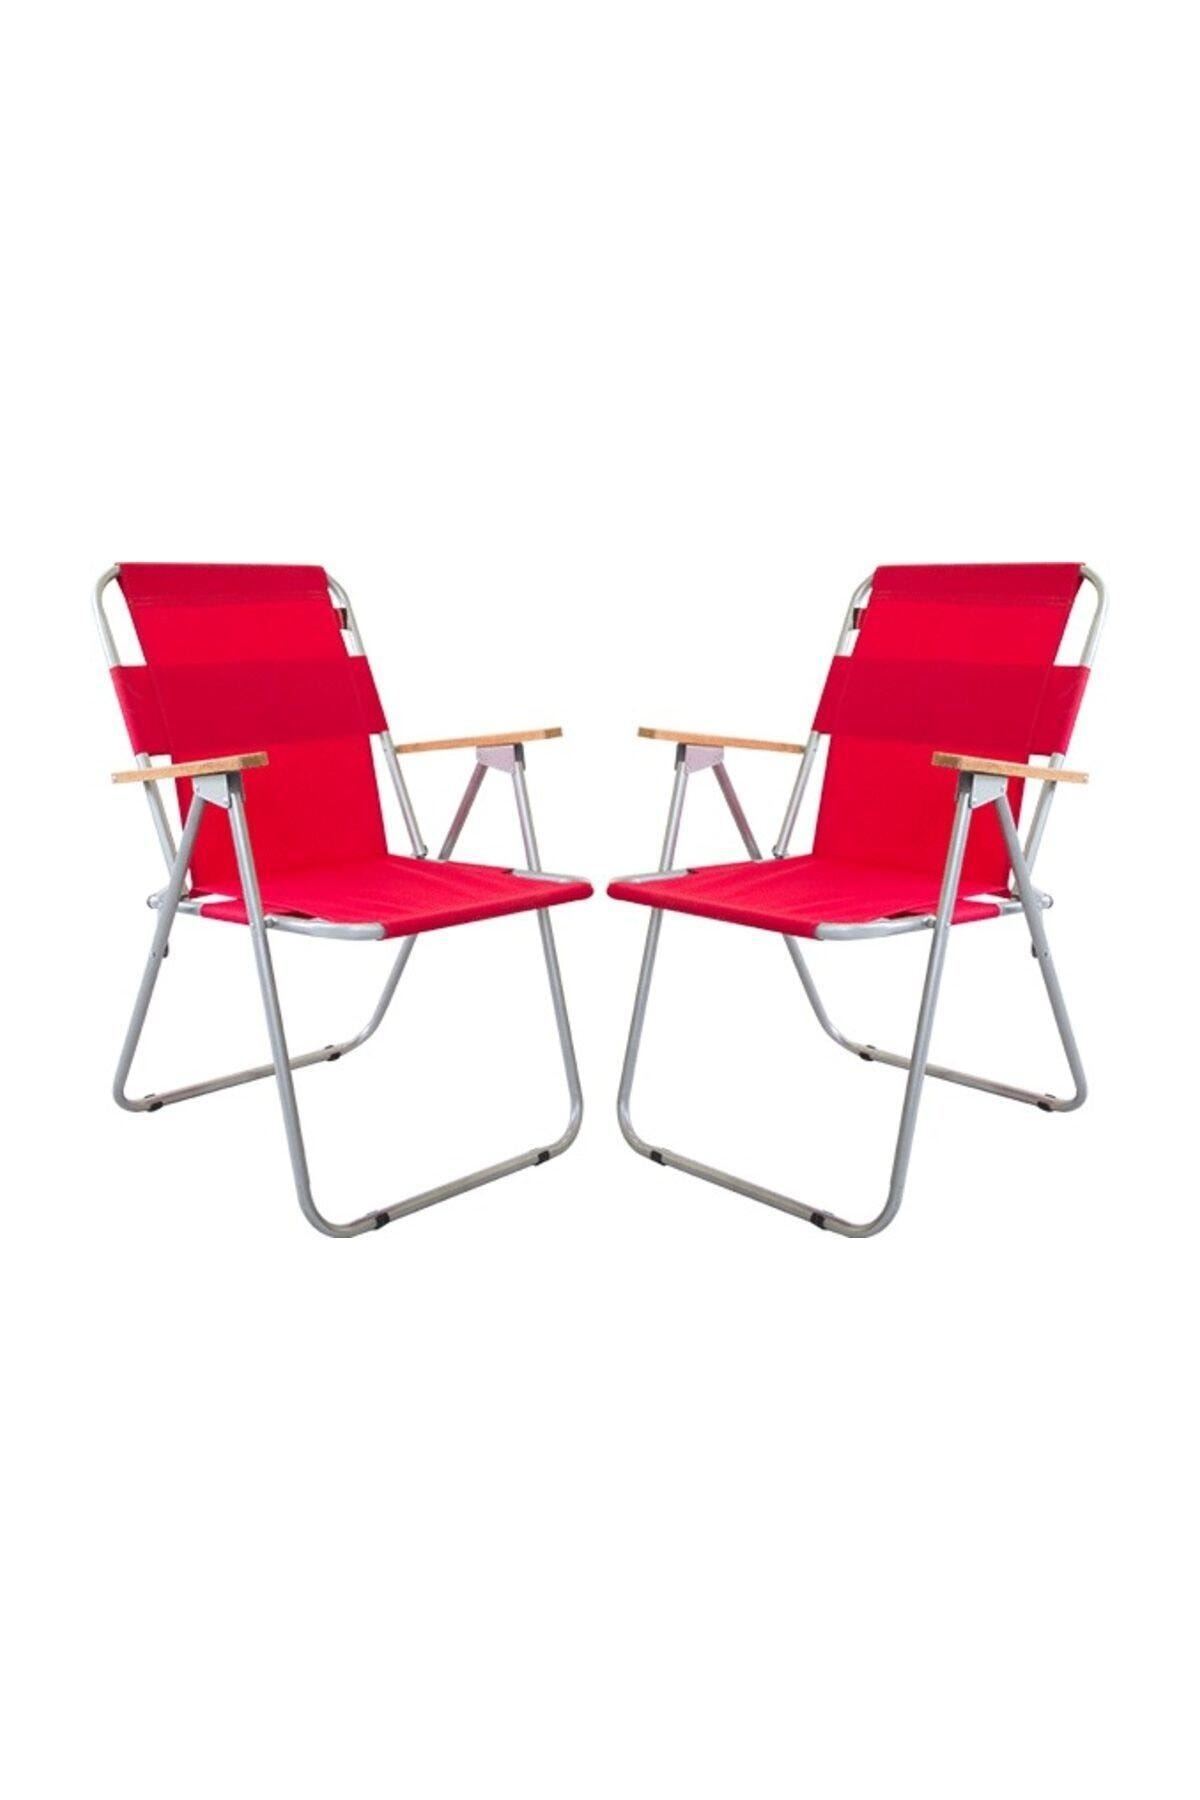 Bofigo 2 Adet Katlanır Sandalye Kamp Sandalyesi Balkon Sandalyesi Katlanabilir Piknik ve Bahçe Sandalyesi Kırmızı